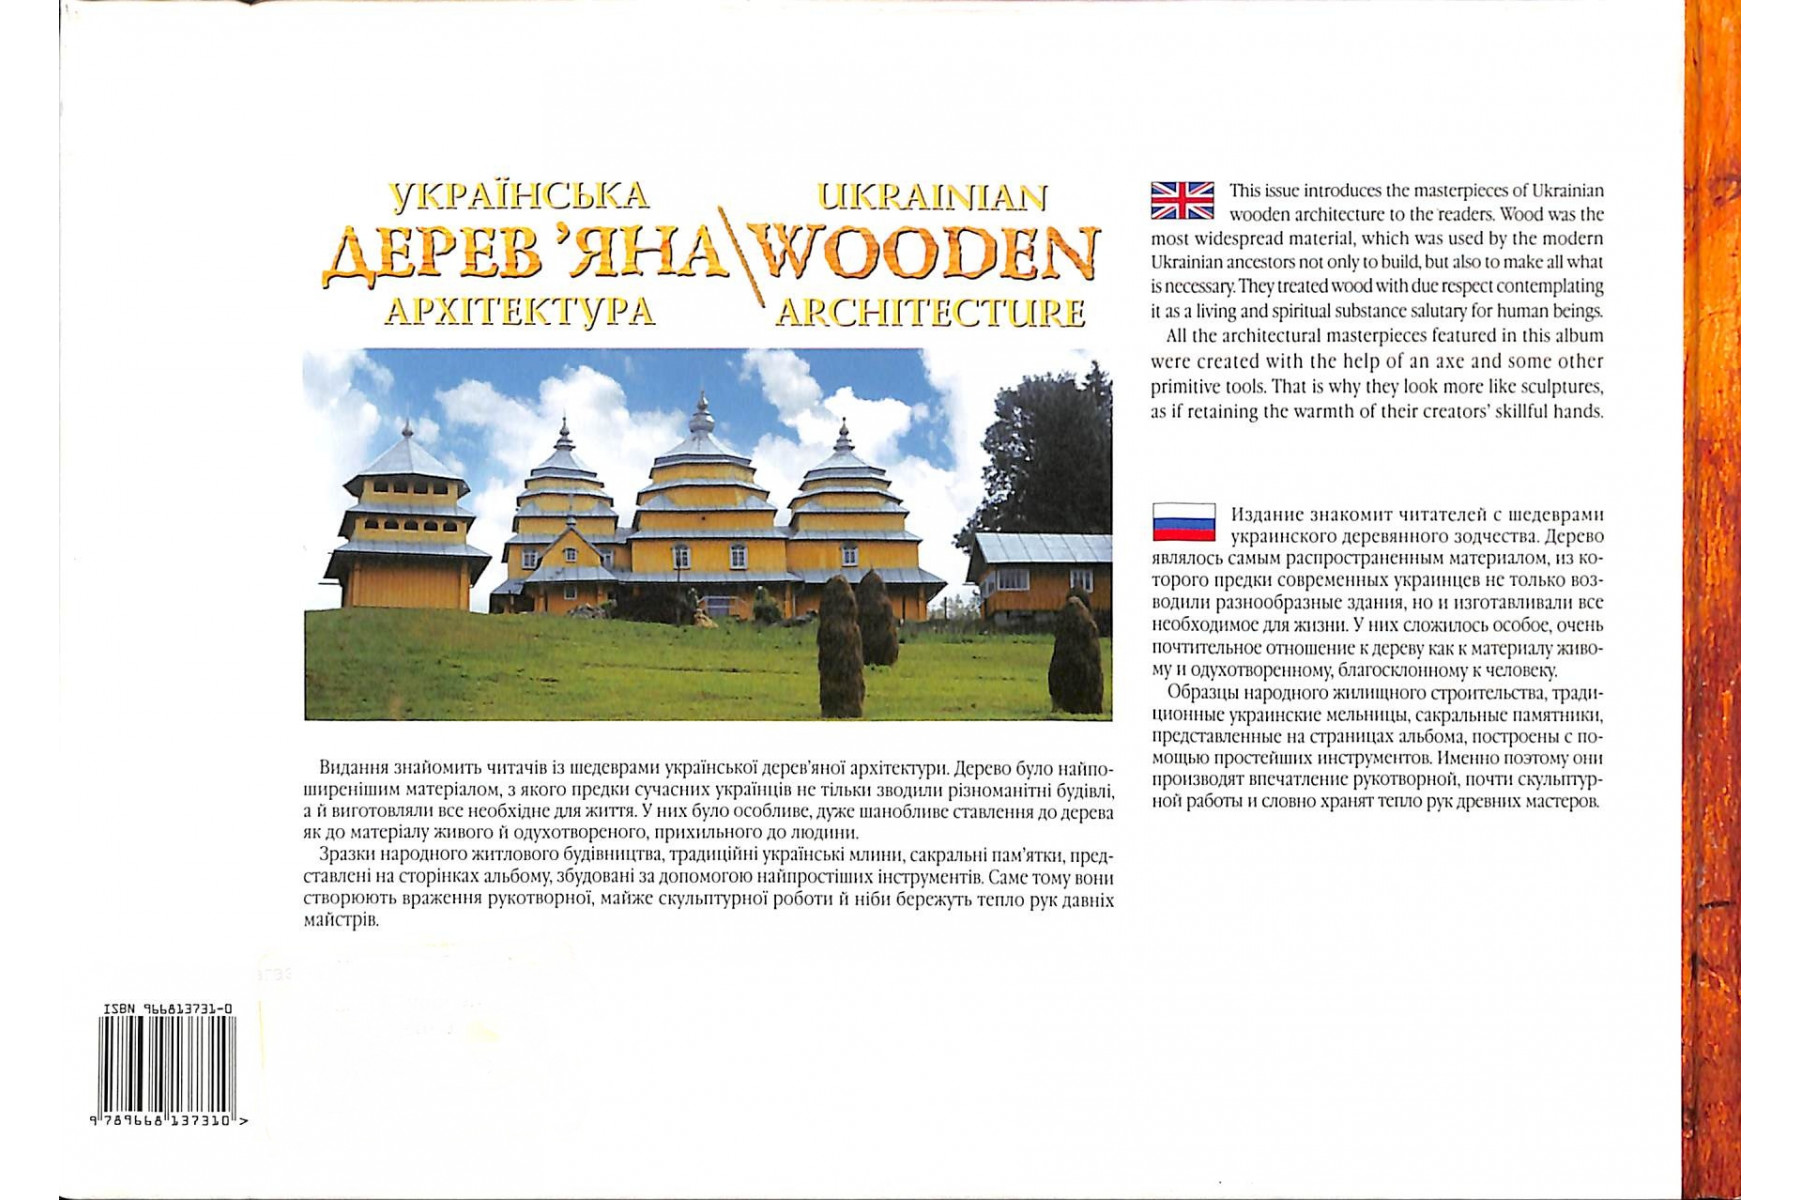 Ukrainian wooden architecture